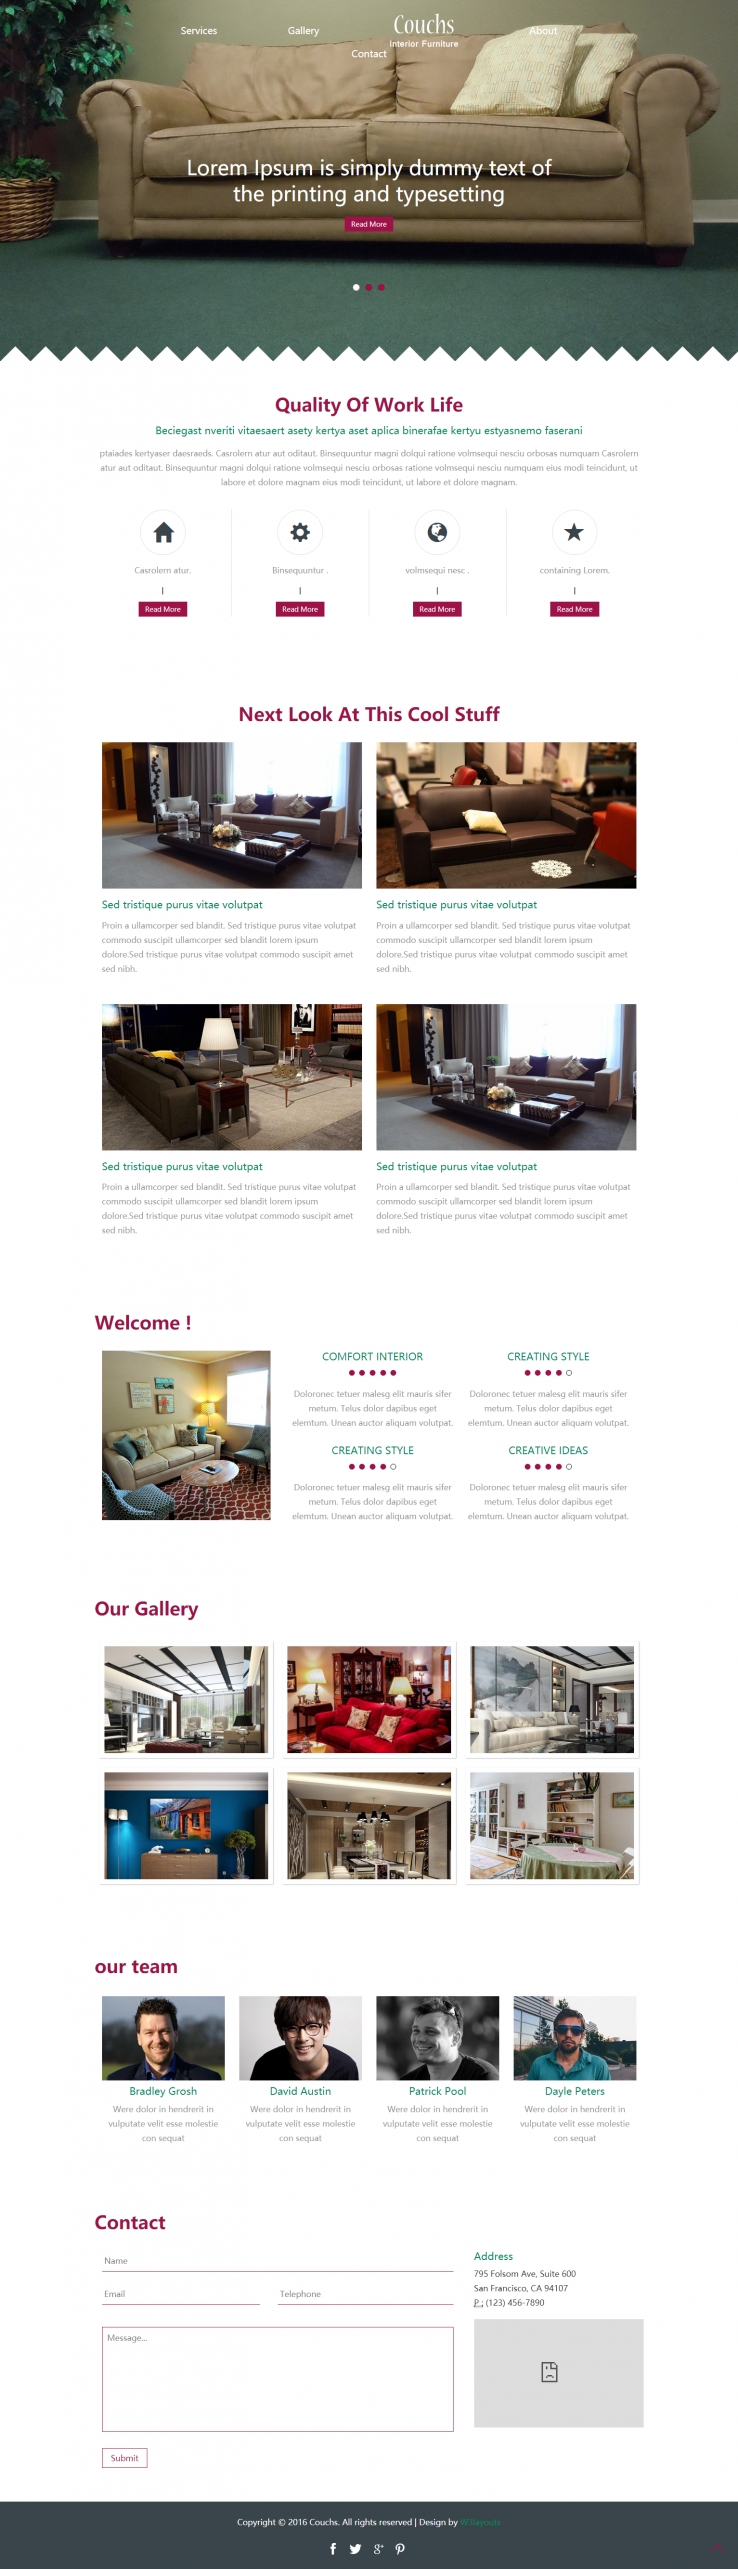 粉色简洁风格的沙发产品展示整站网站源码下载